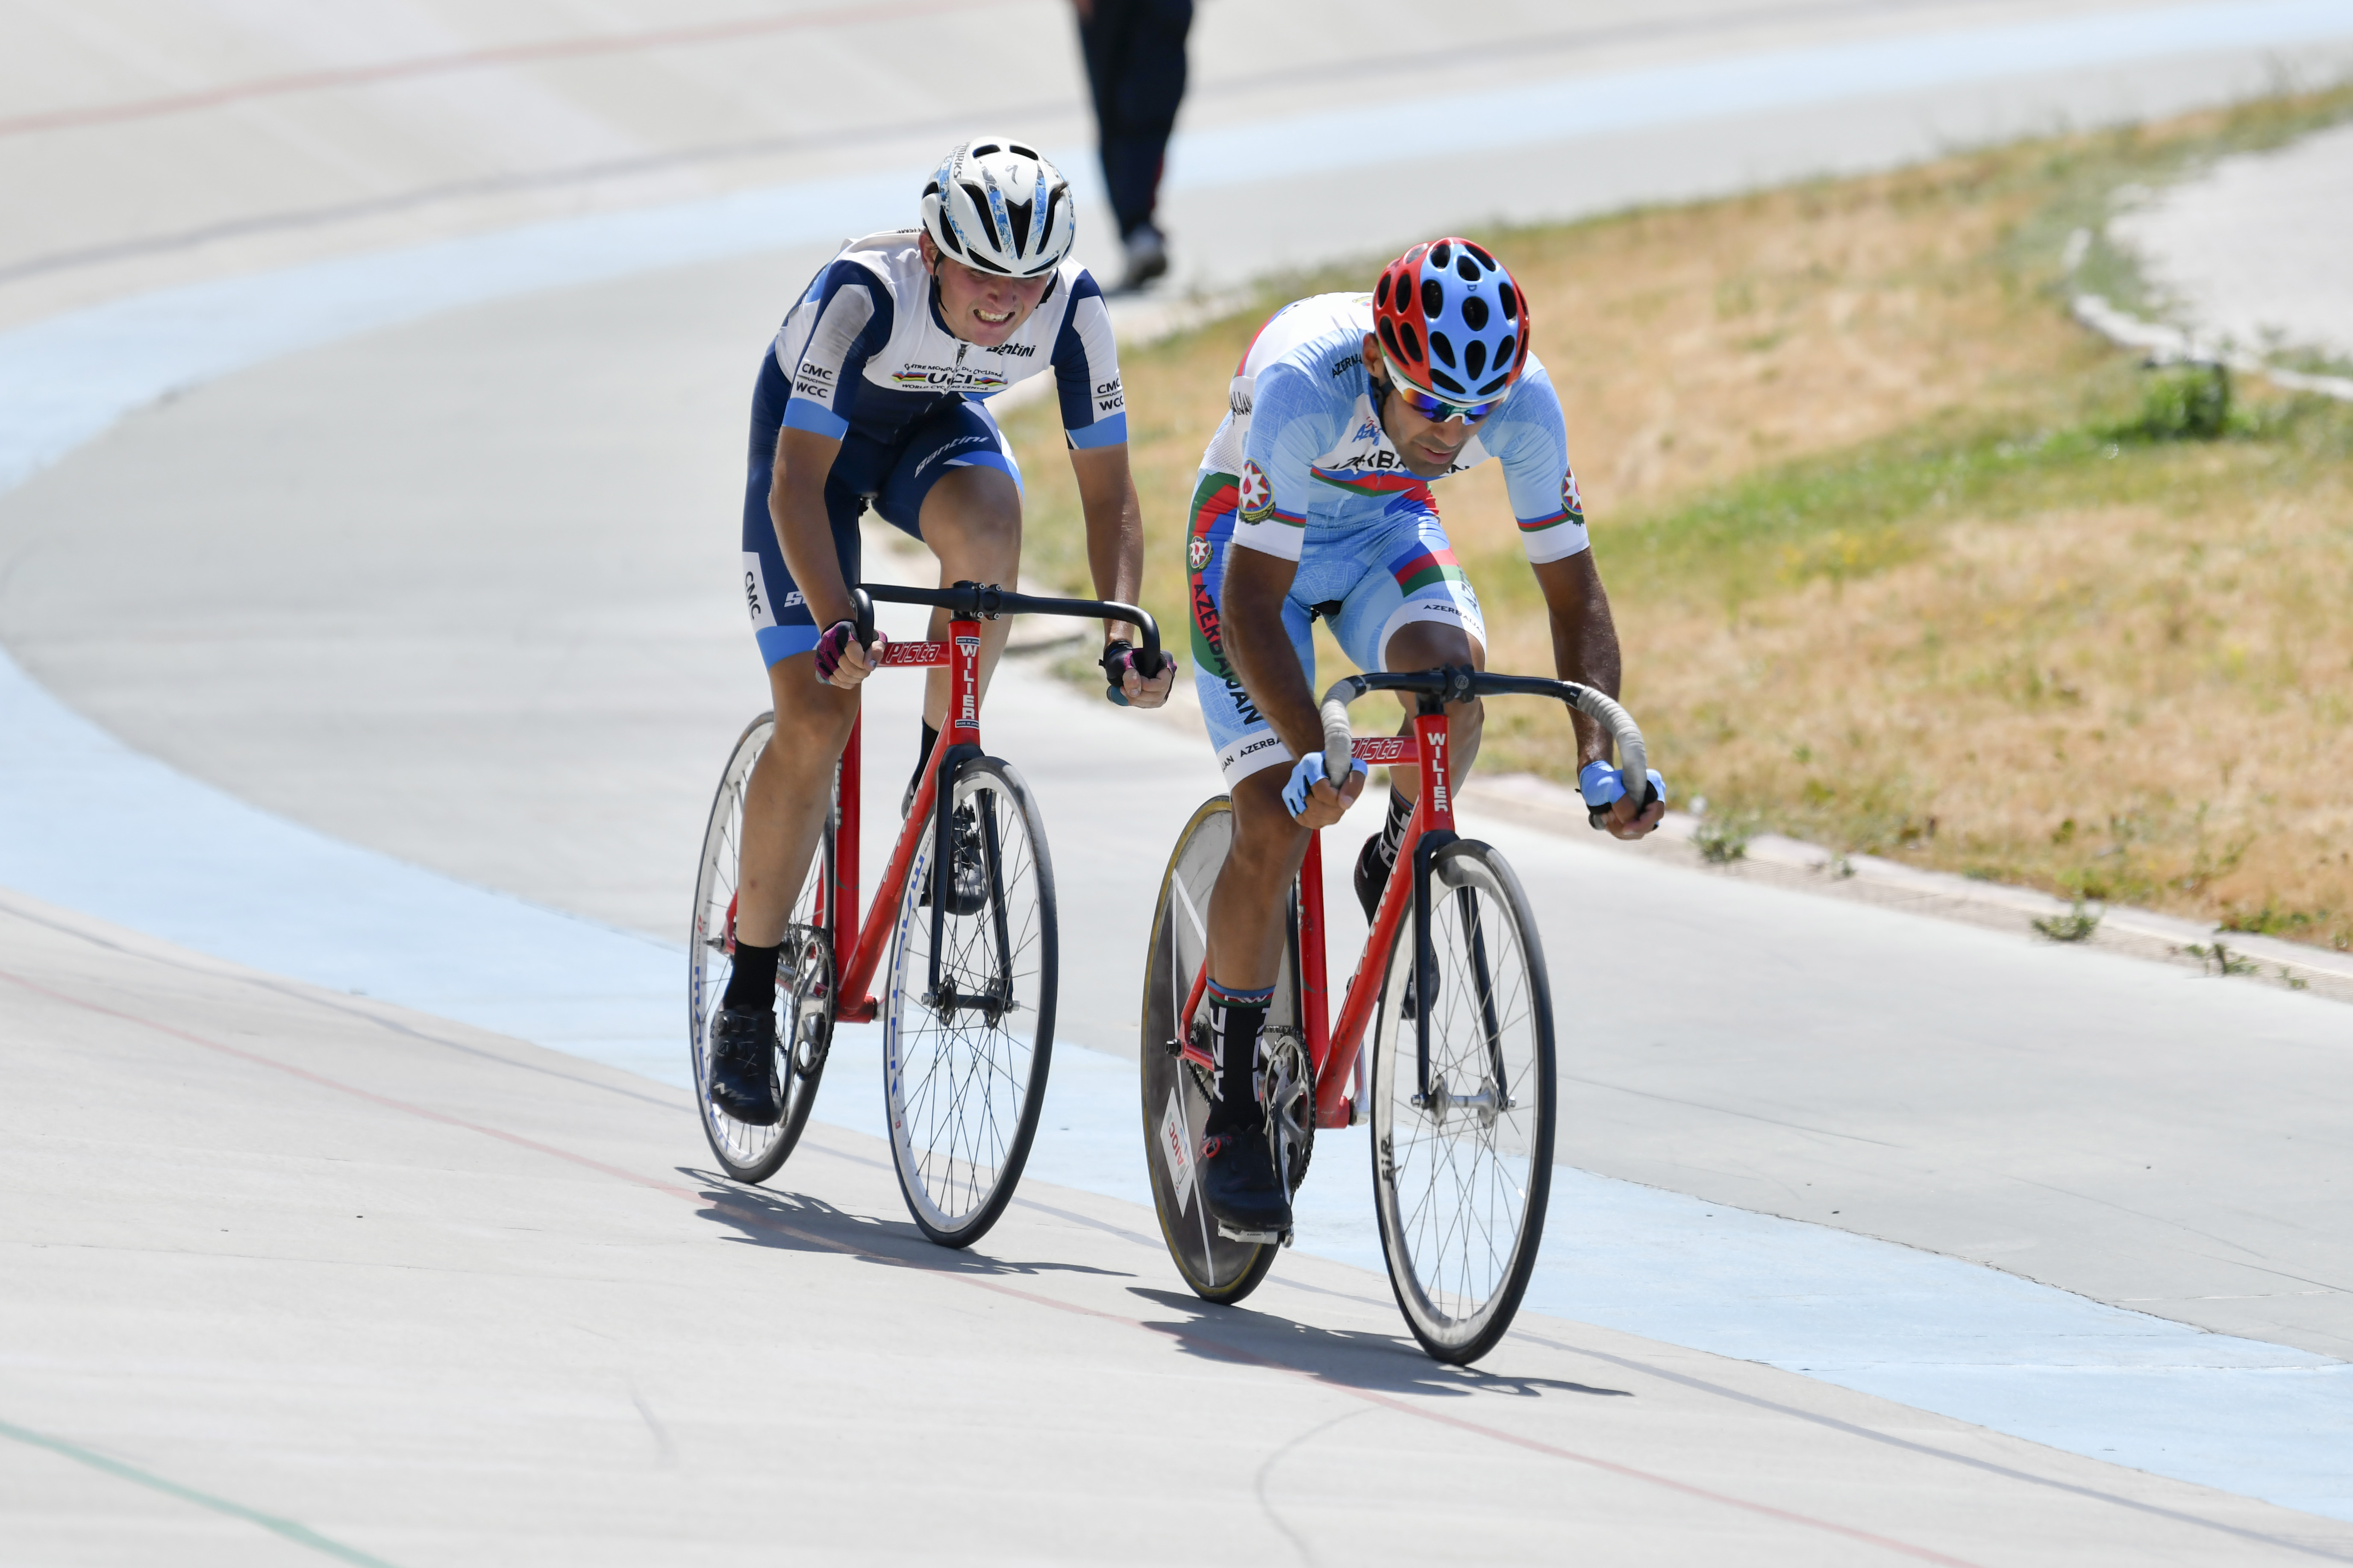 Trek velosipedi üzrə Azərbaycan çempionatına start verilib